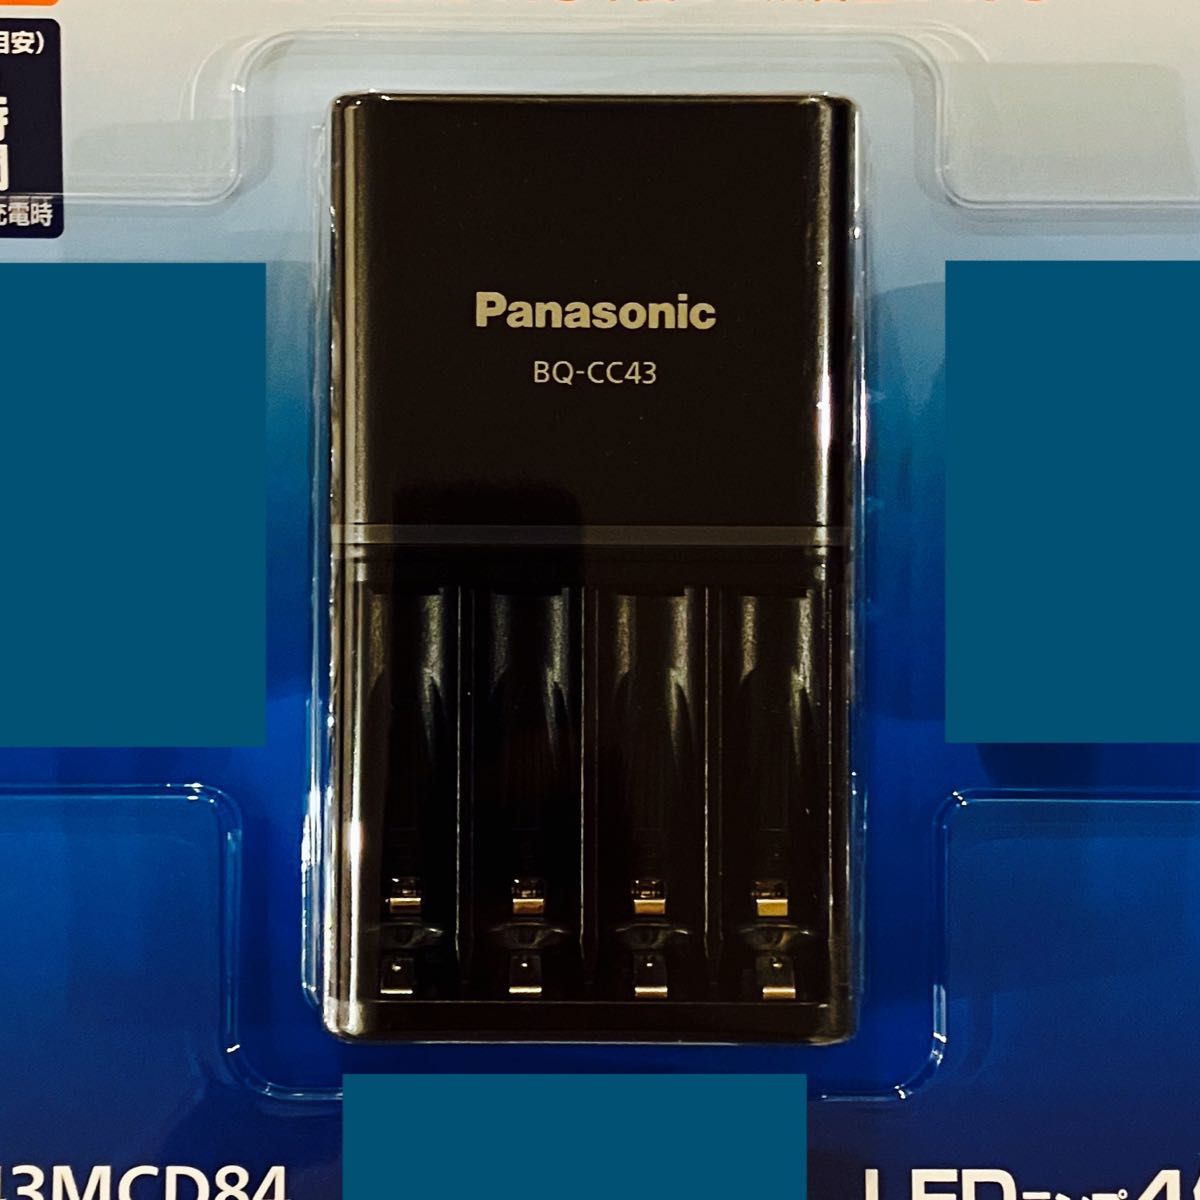 【新品未使用】Panasonic エネループ　充電器1個